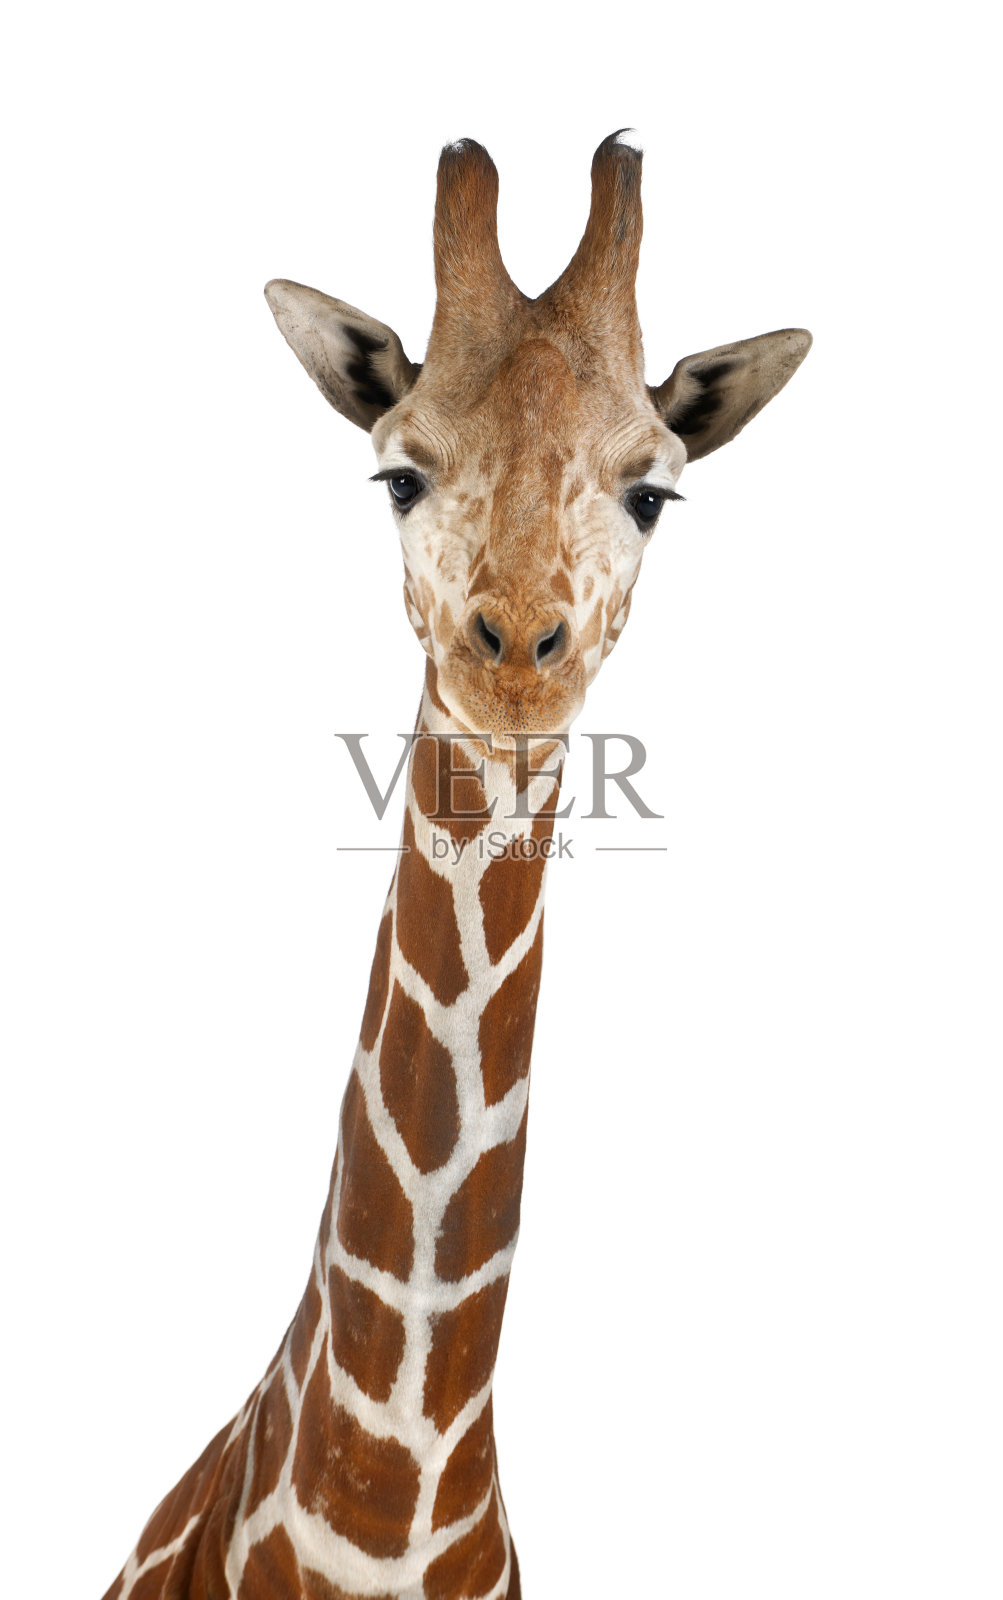 索马里长颈鹿照片摄影图片